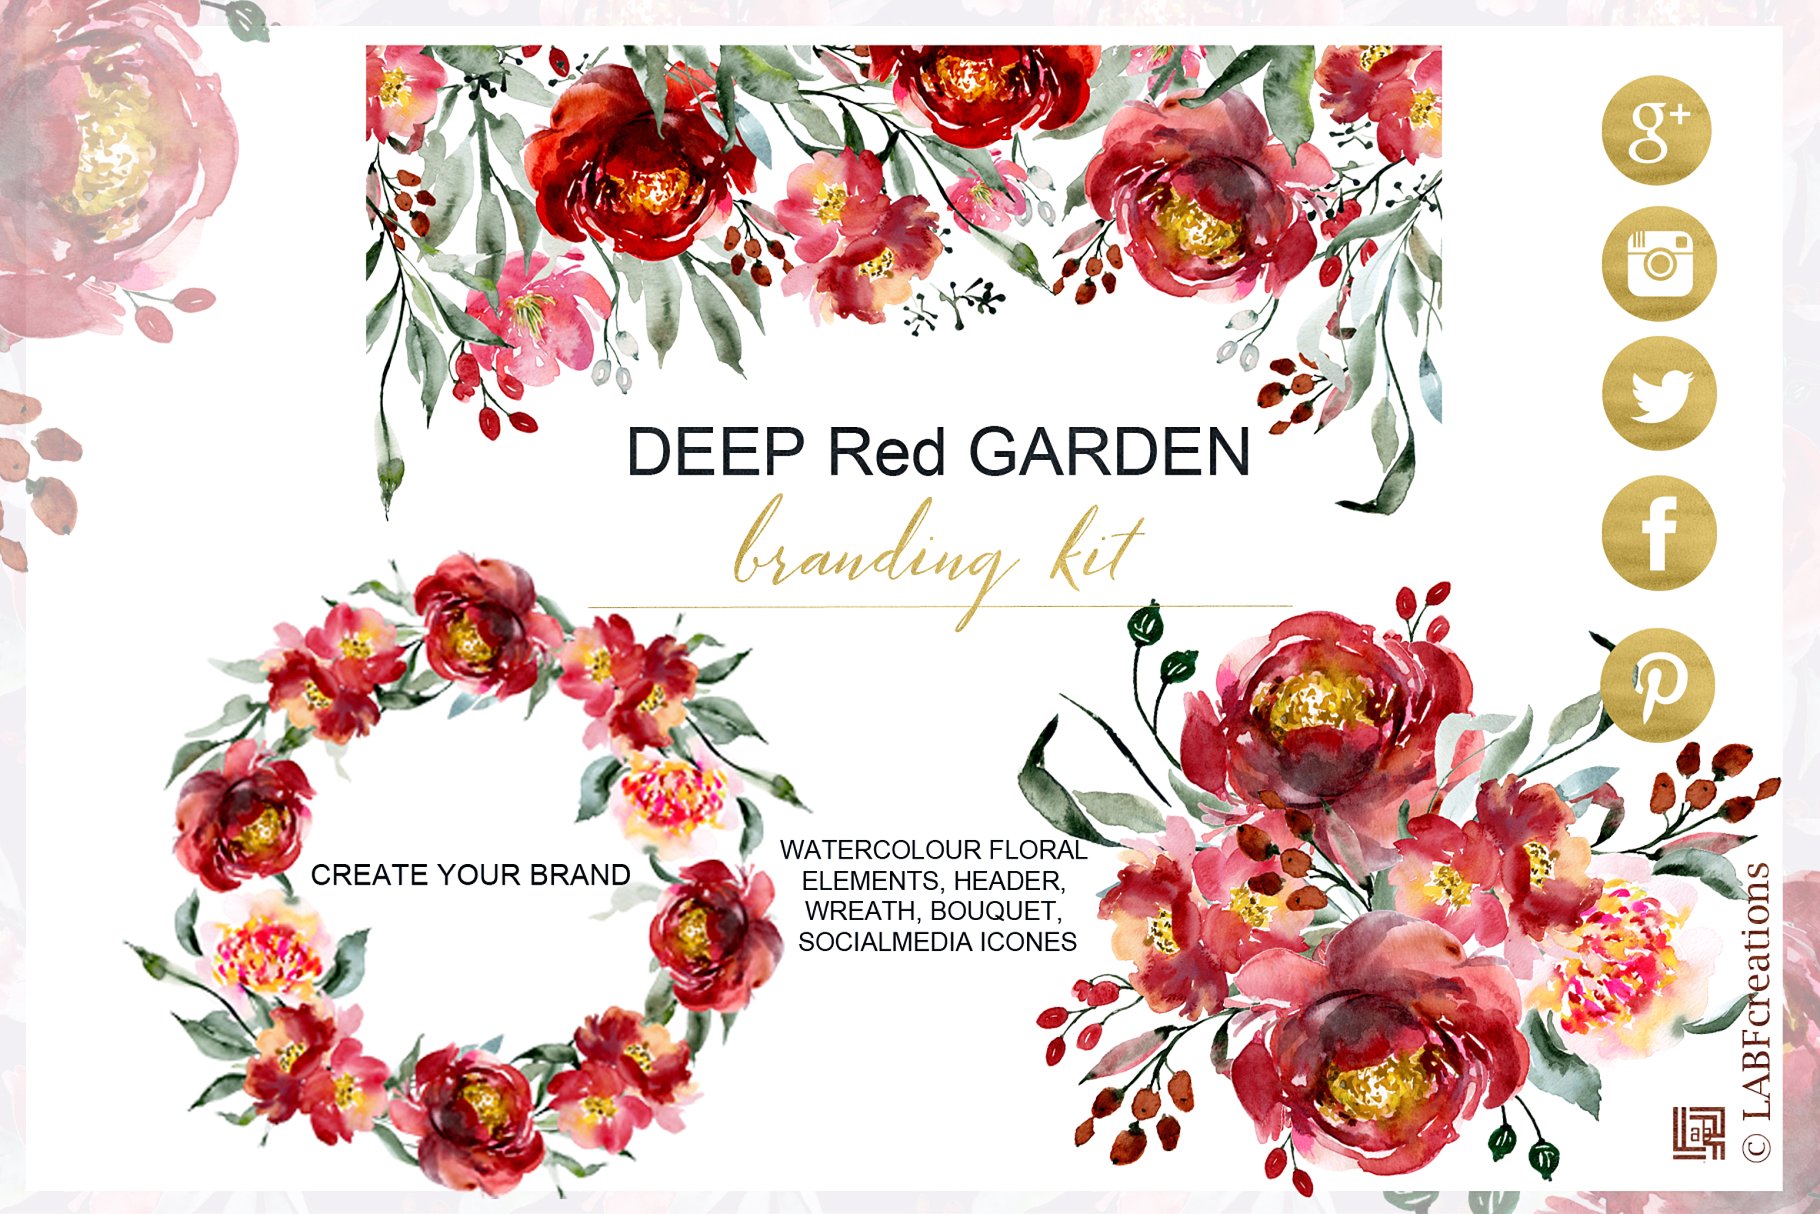 深红色水彩花卉元素 Deep red garden. Branding kit.插图(1)